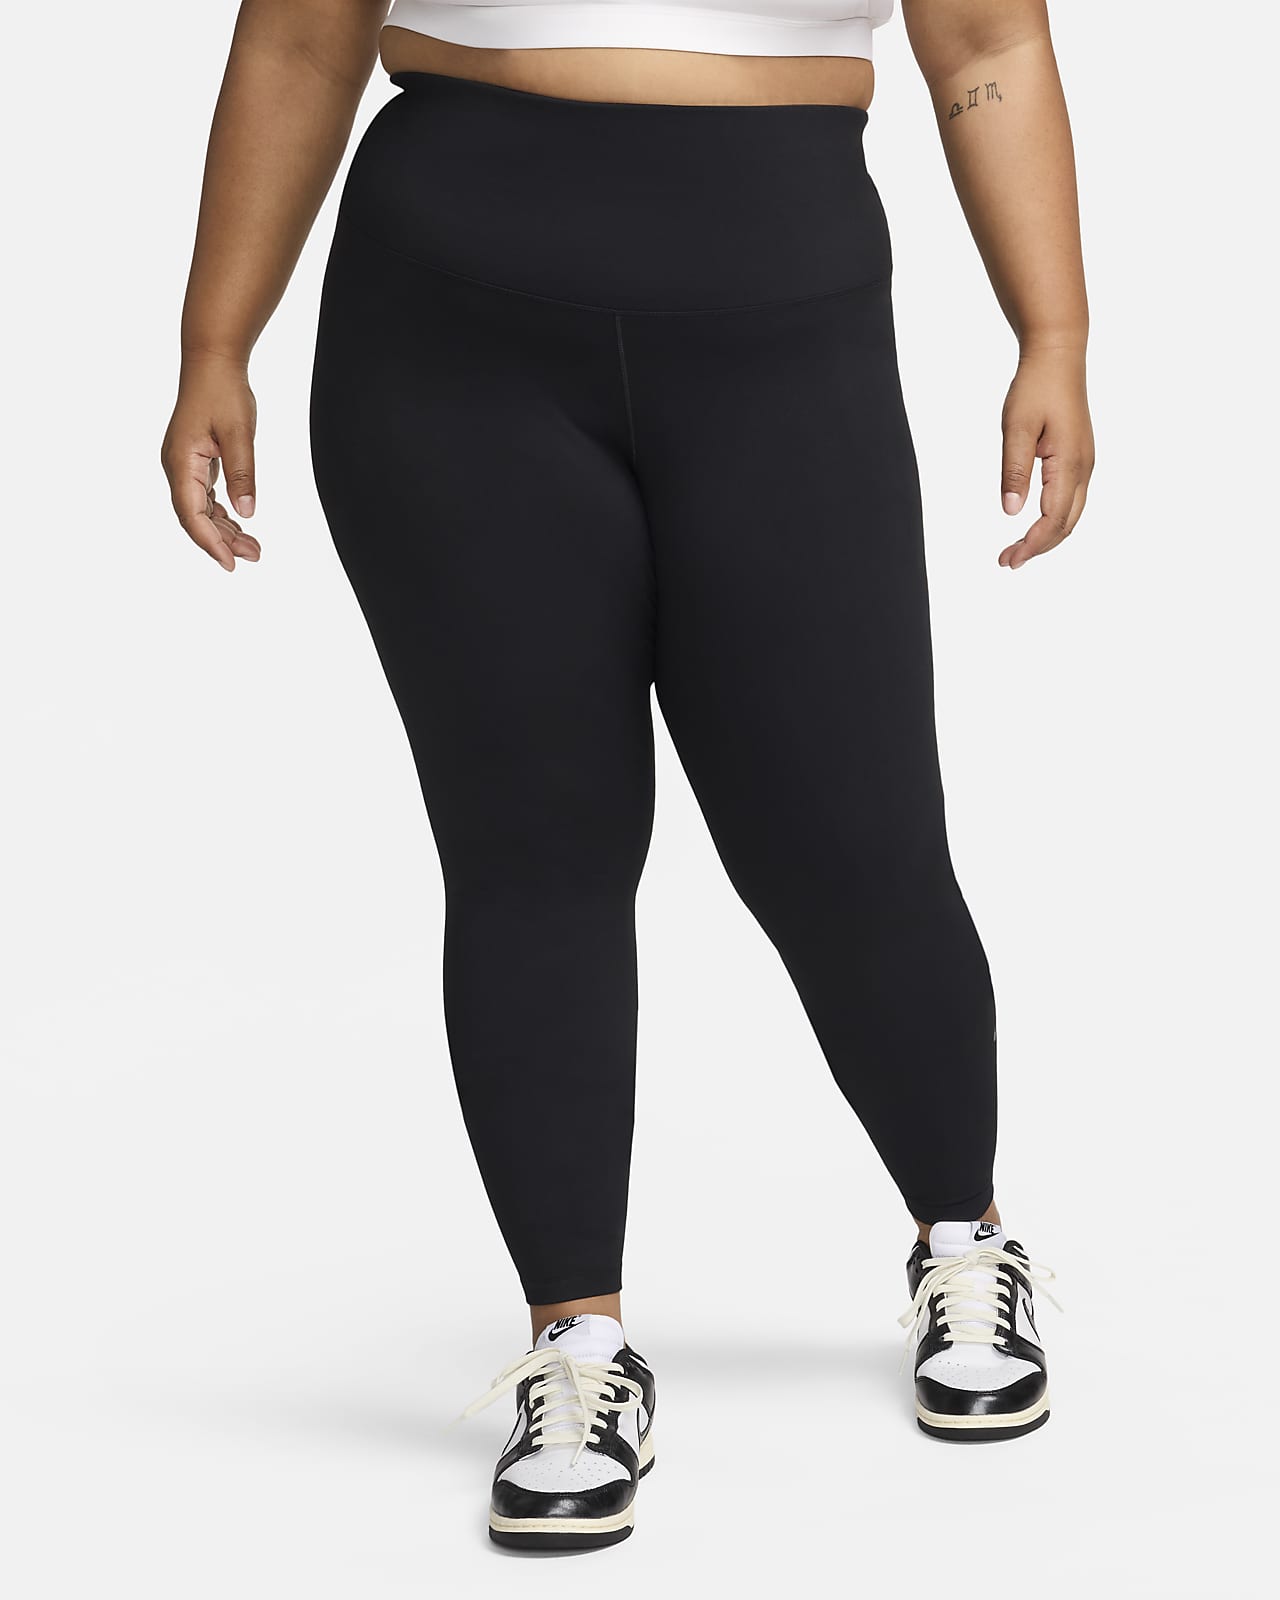 Γυναικείο ψηλόμεσο κολάν σε κανονικό μήκος Nike One (μεγάλα μεγέθη)